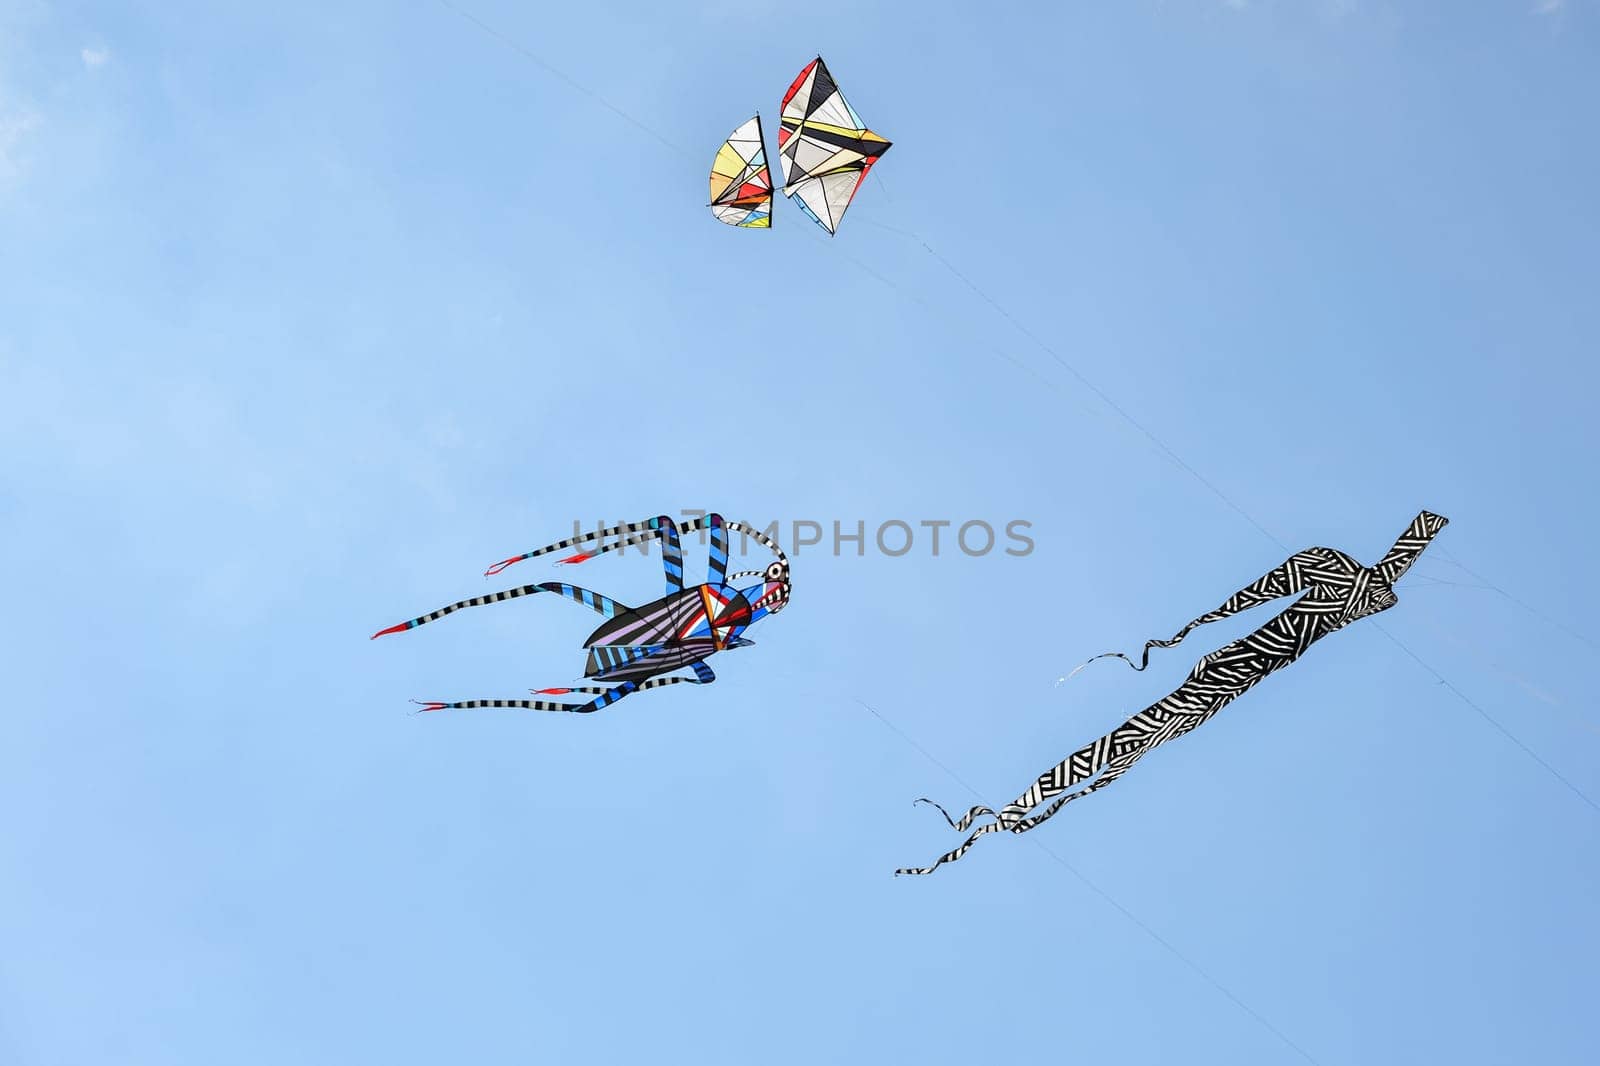 Kite festival.Kites in the sky in Atlantic ocean by Godi